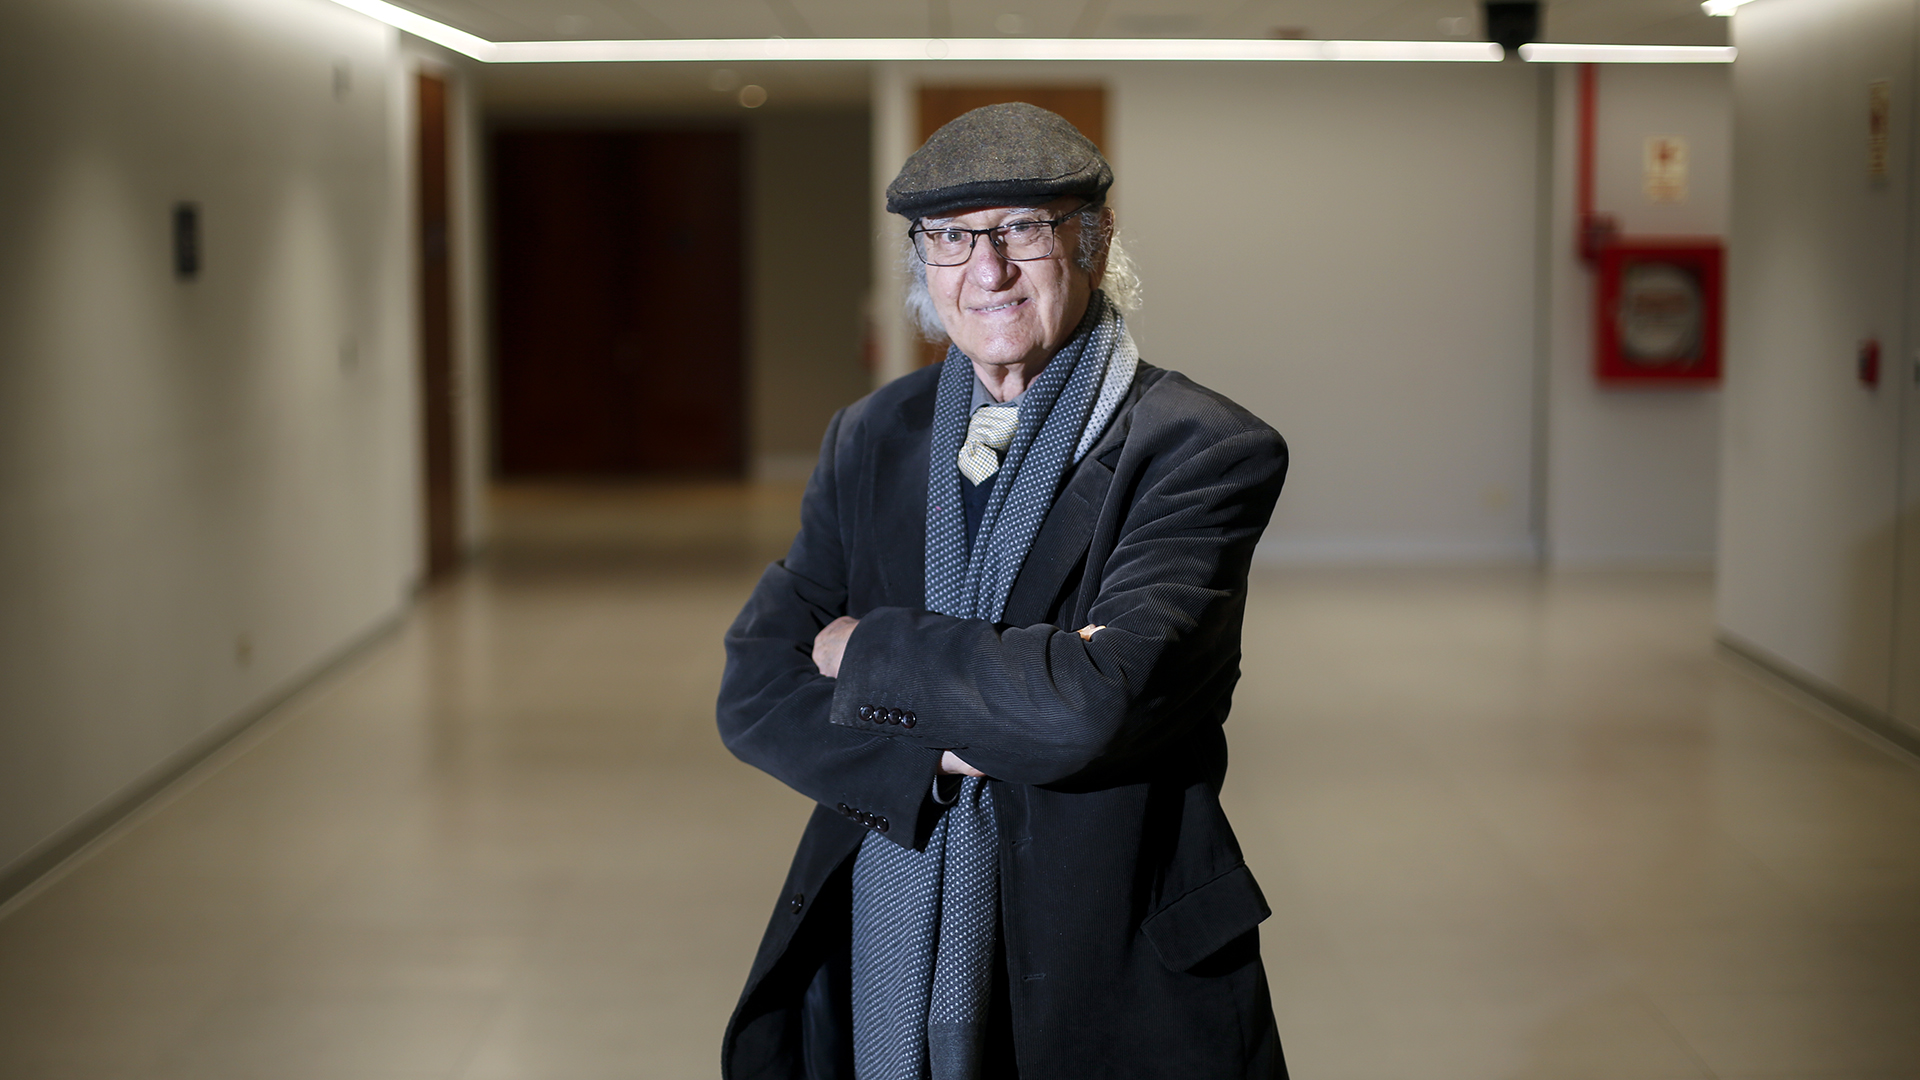 Fotografía de Santiago Graña, profesor emérito de arquitectura PUCP. Es un señor de aprox 70 años con boina que sonríe a la cámara.